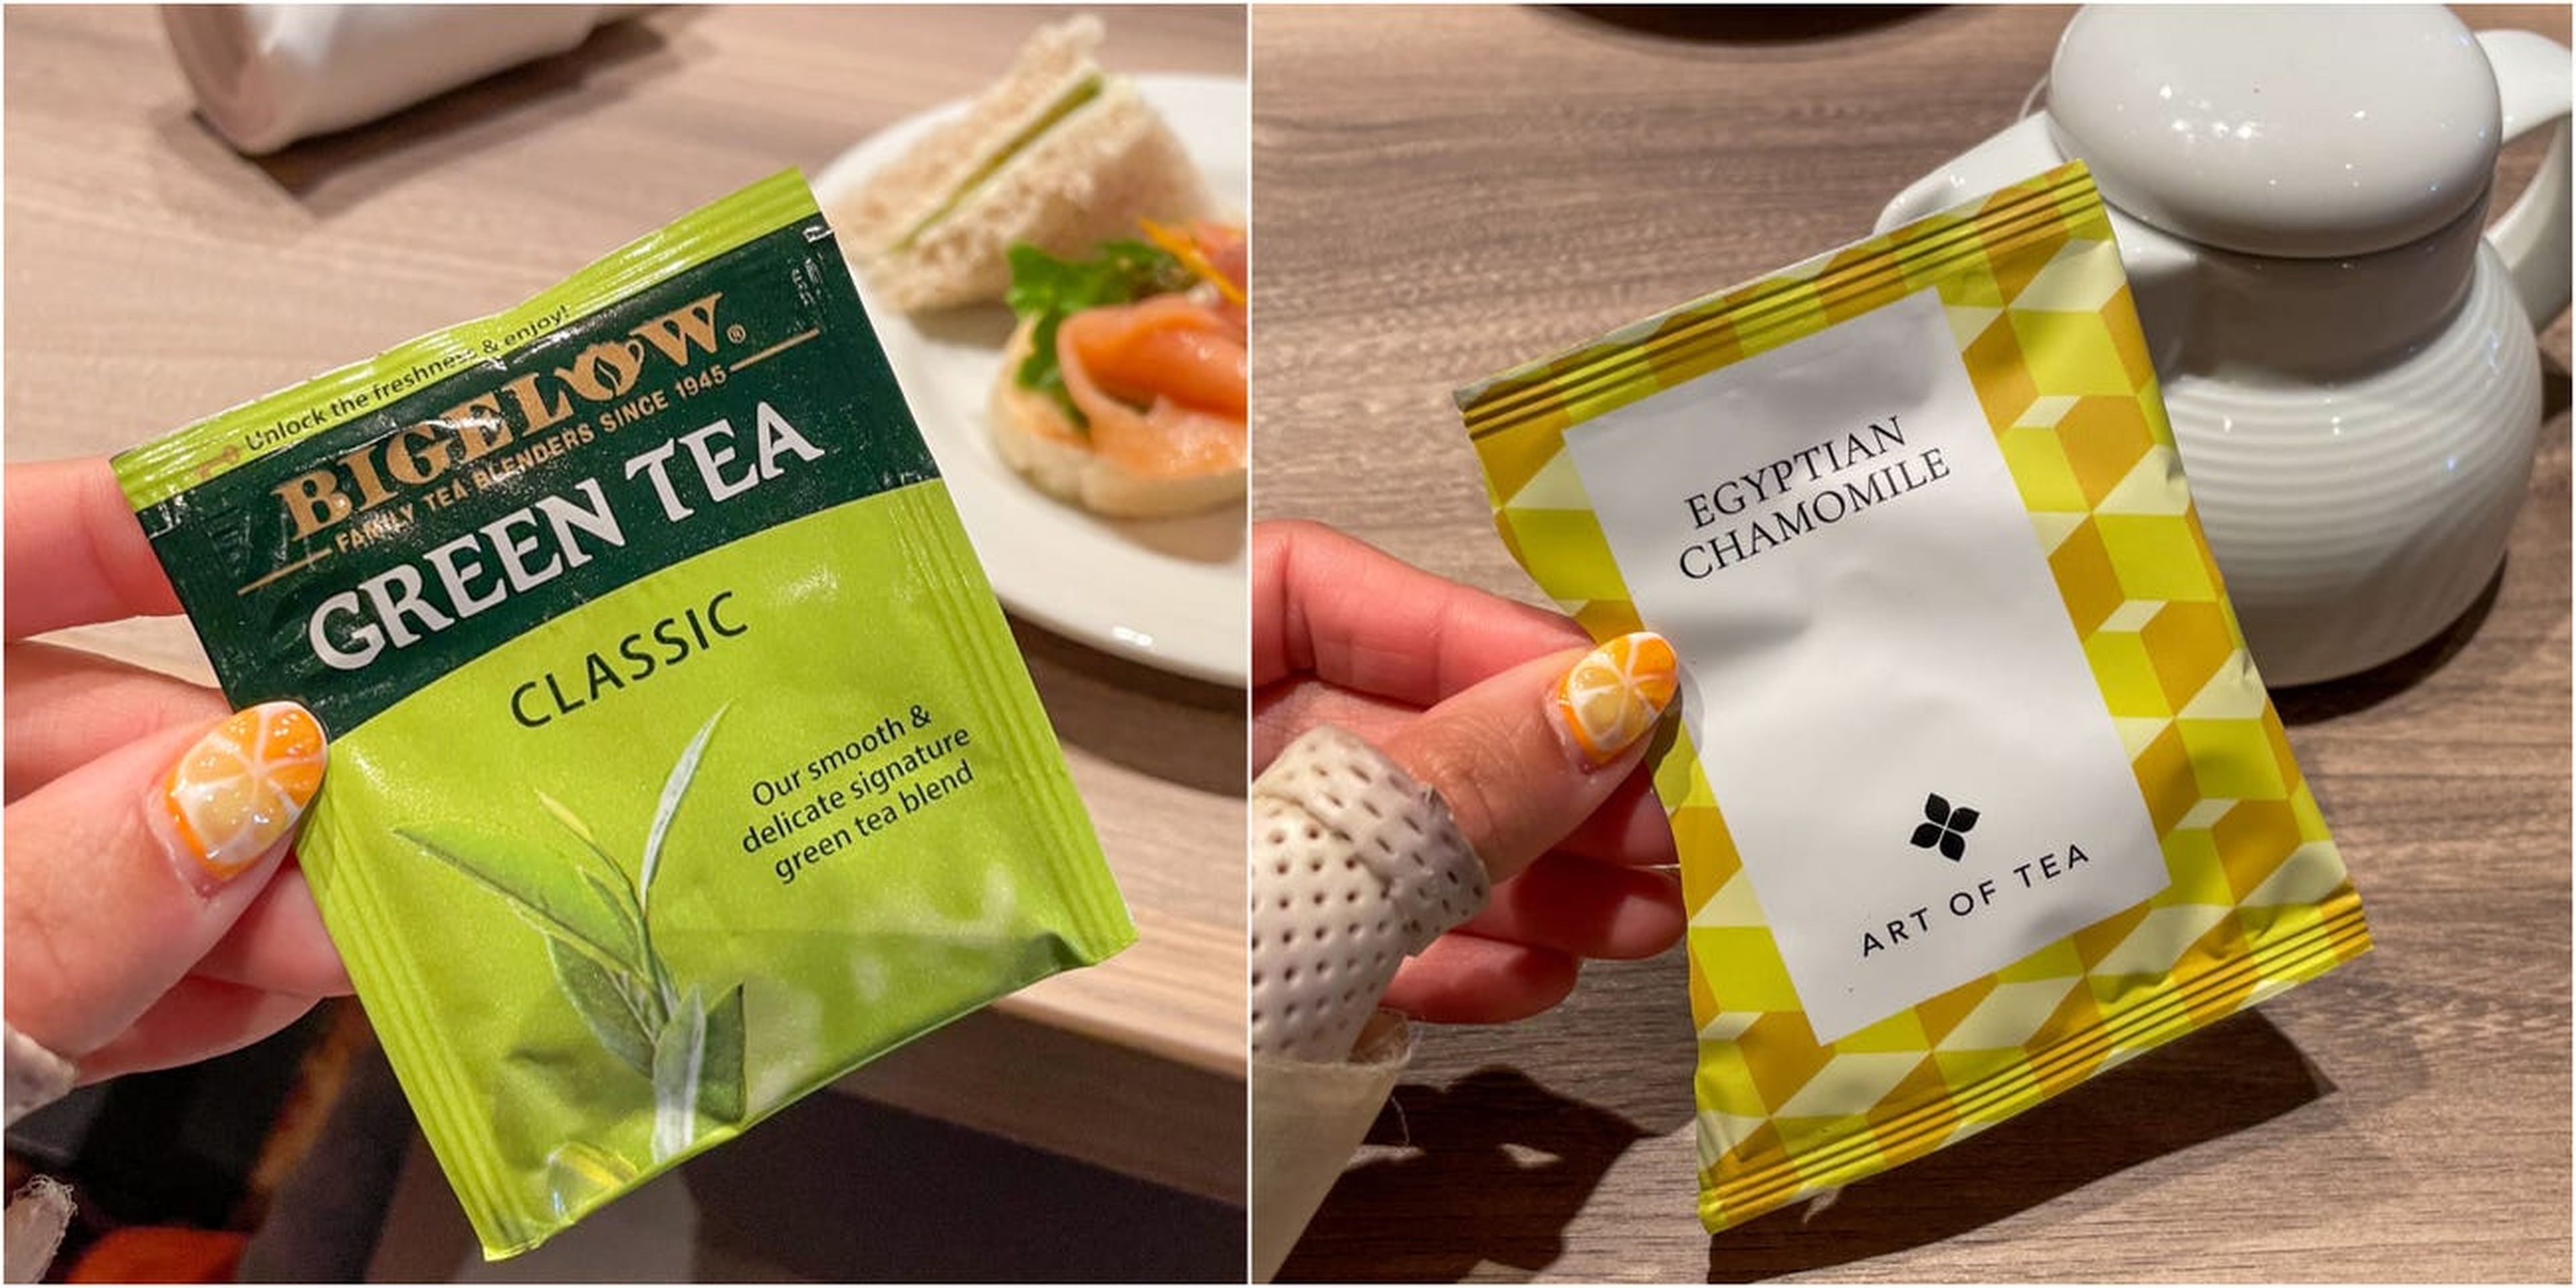 Las bolsitas de Art of Tea (derecha) costaban 1,50 dólares cada una durante la hora del té. El té verde de Bigelow (izquierda) era gratis.